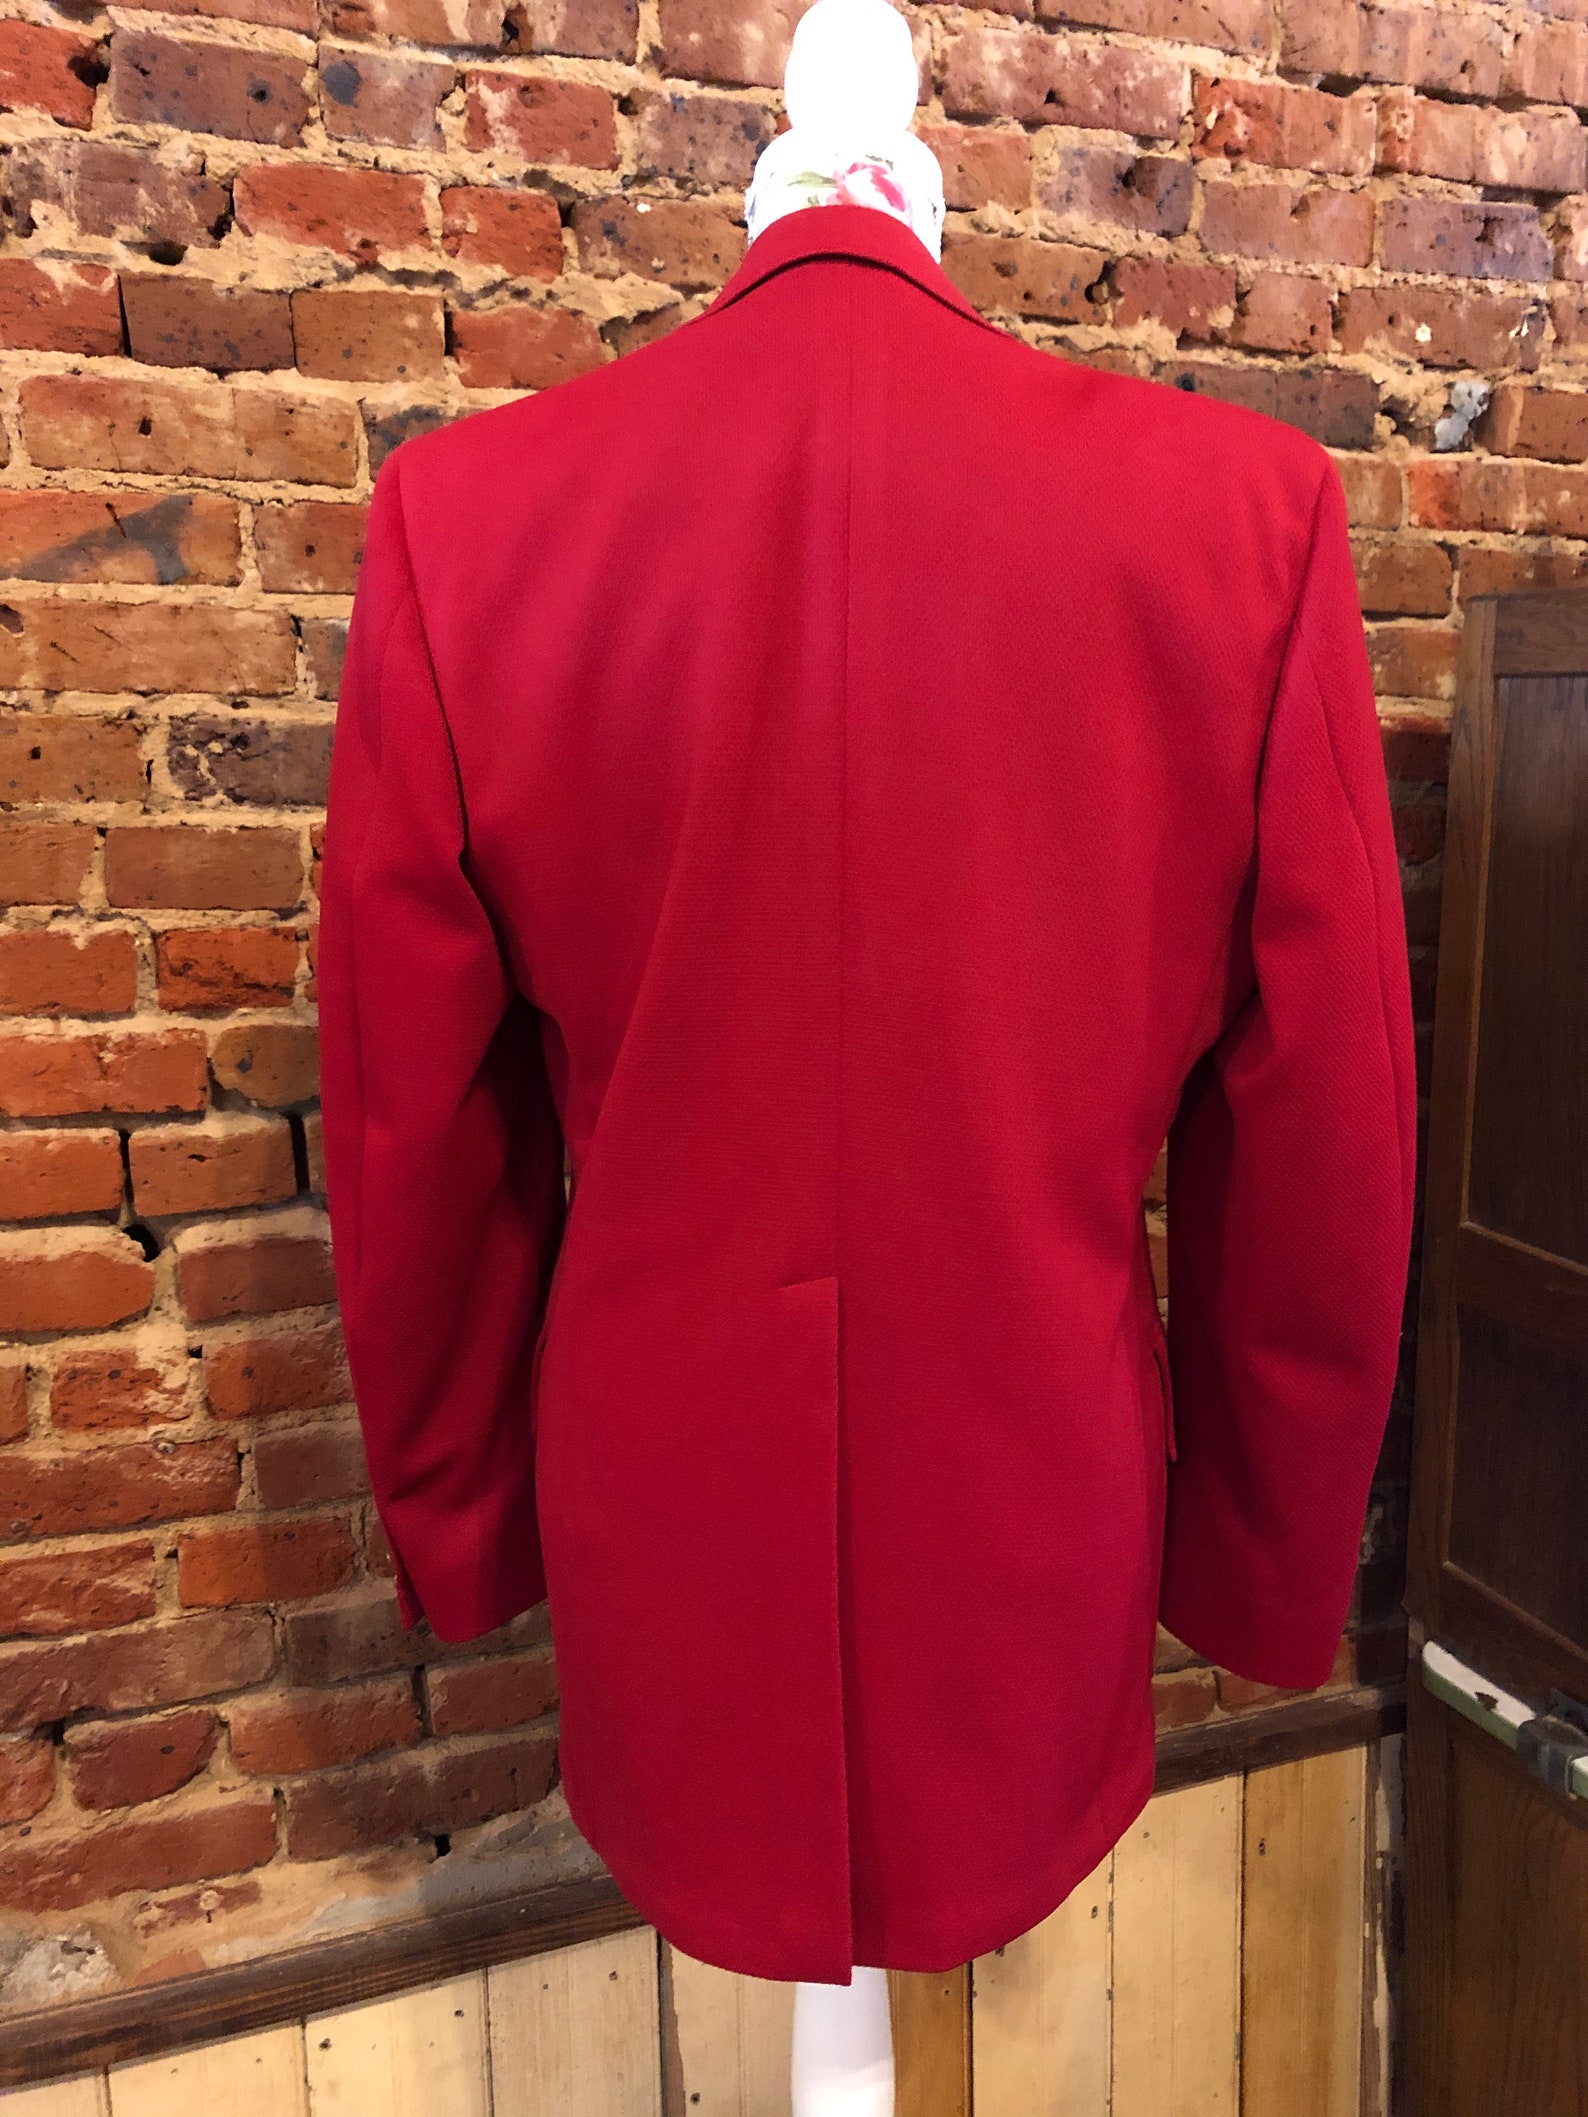 Vintage Men's Champion Blazer / Bright Red Blazer / | Etsy